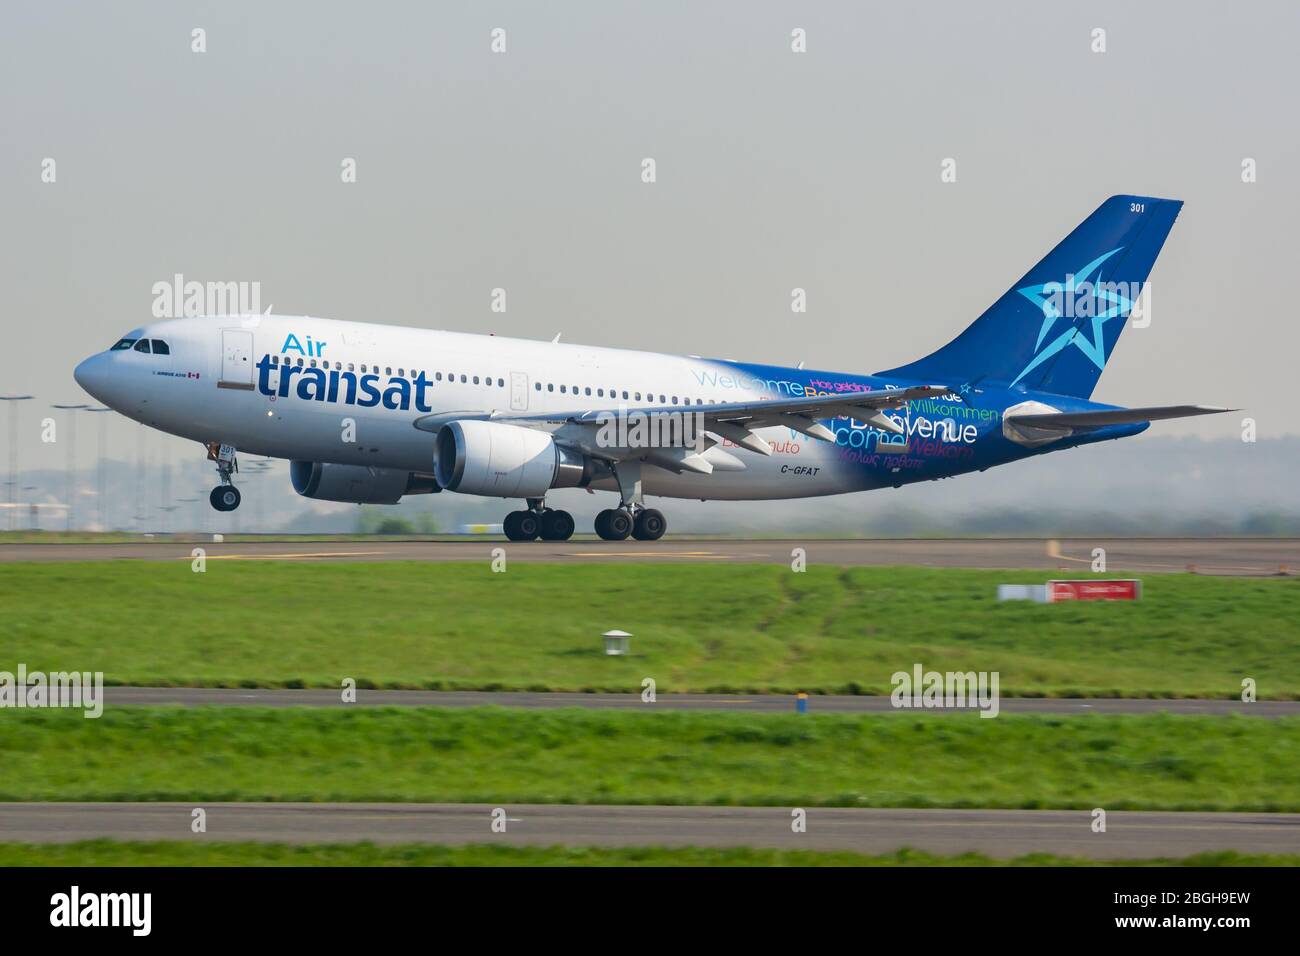 Paris / France - April 24, 2015: Air Transat Airbus A310 C-GFAT passenger plane departure and take off at Paris Charles de Gaulle Airport Stock Photo